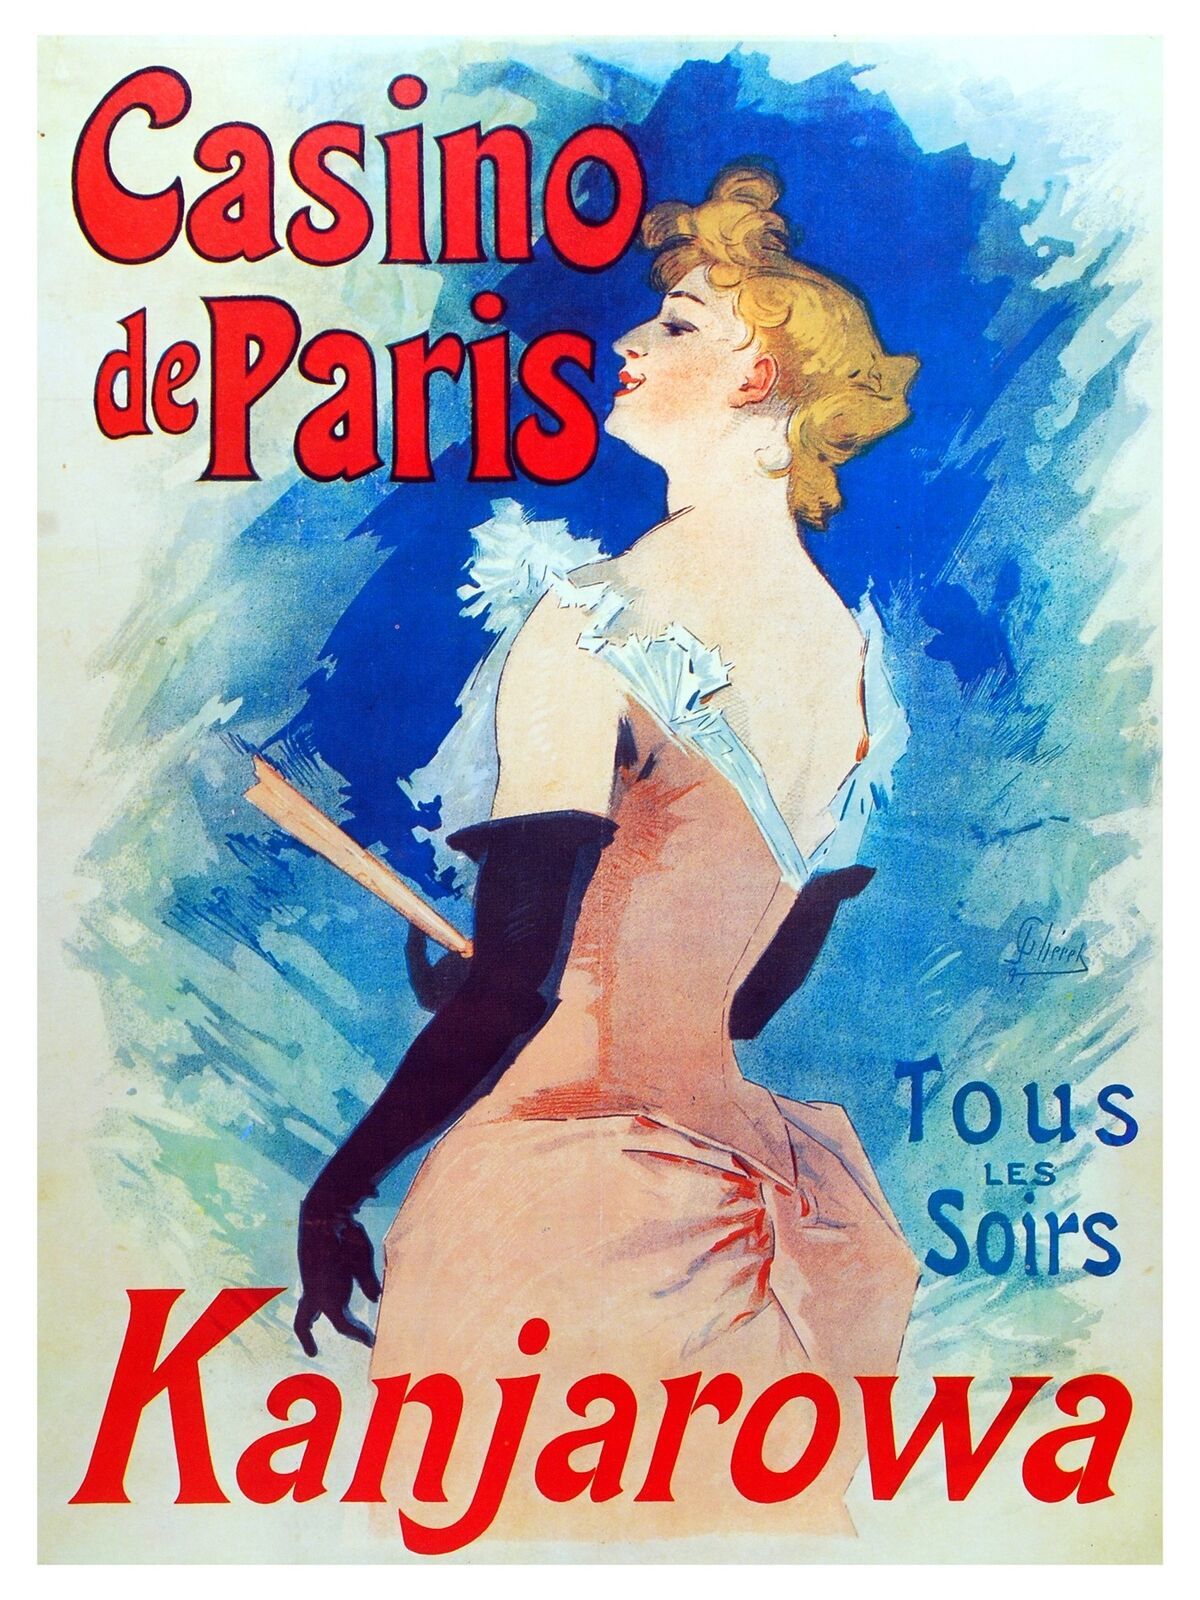 Primary image for 5232.Casino de paris Kanjarowa Poster.Nouveau Room Interior design.Decor Art